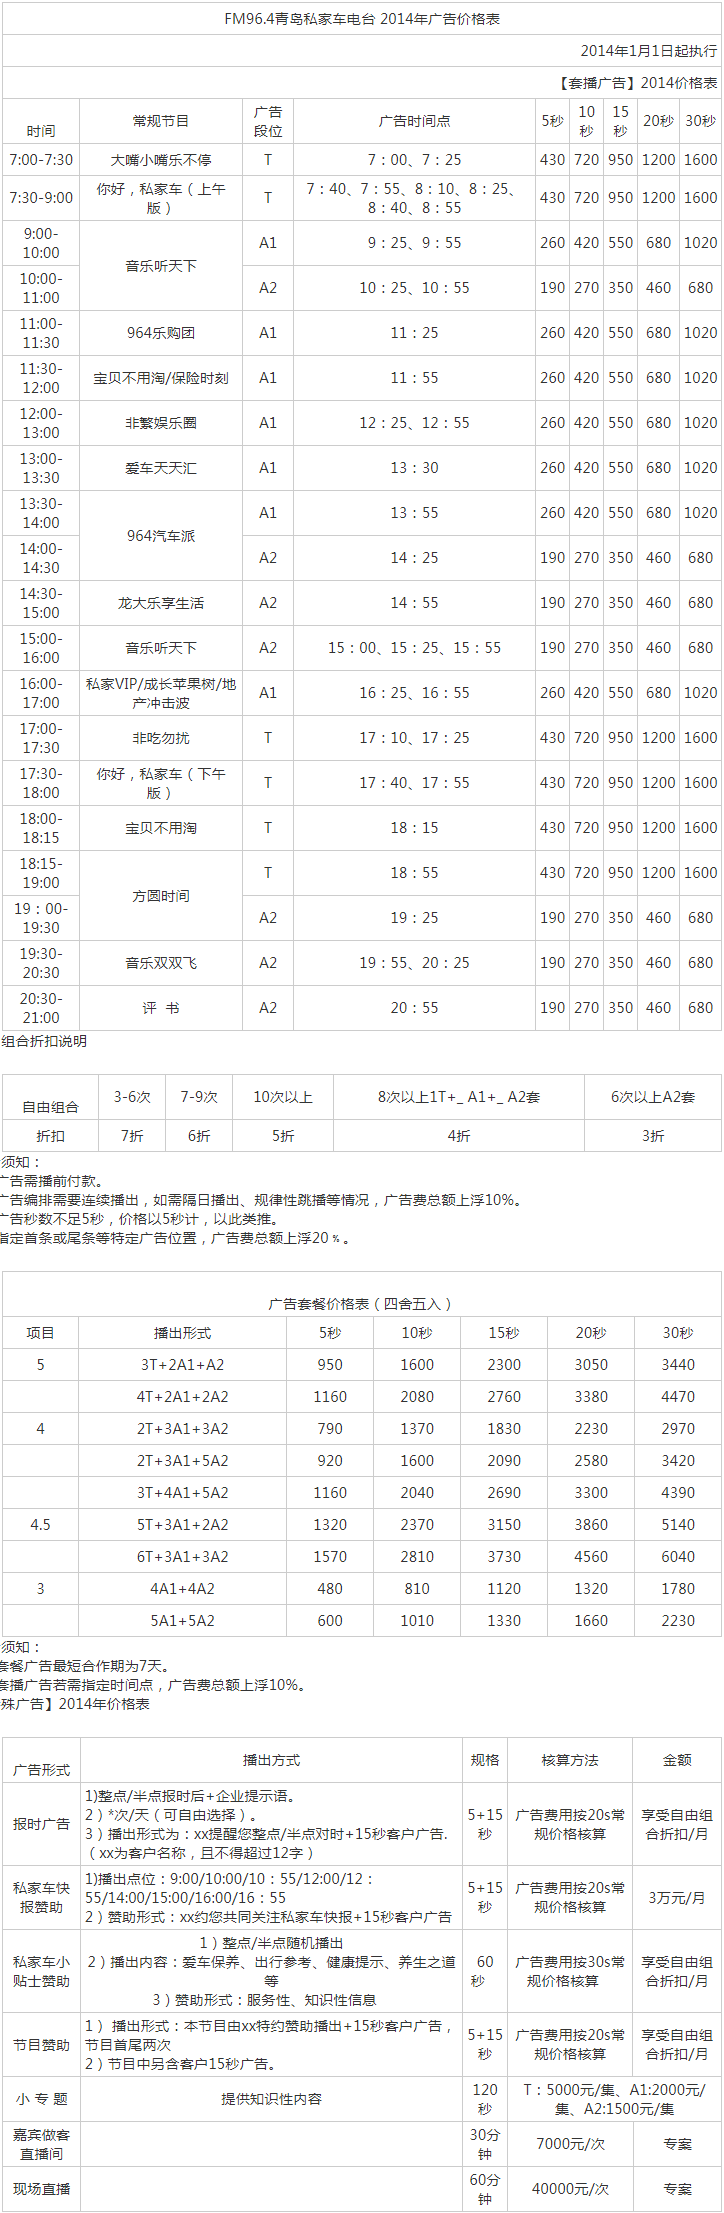 2014青岛人民广播电台私家车电台 FM96.4广告报价表.png